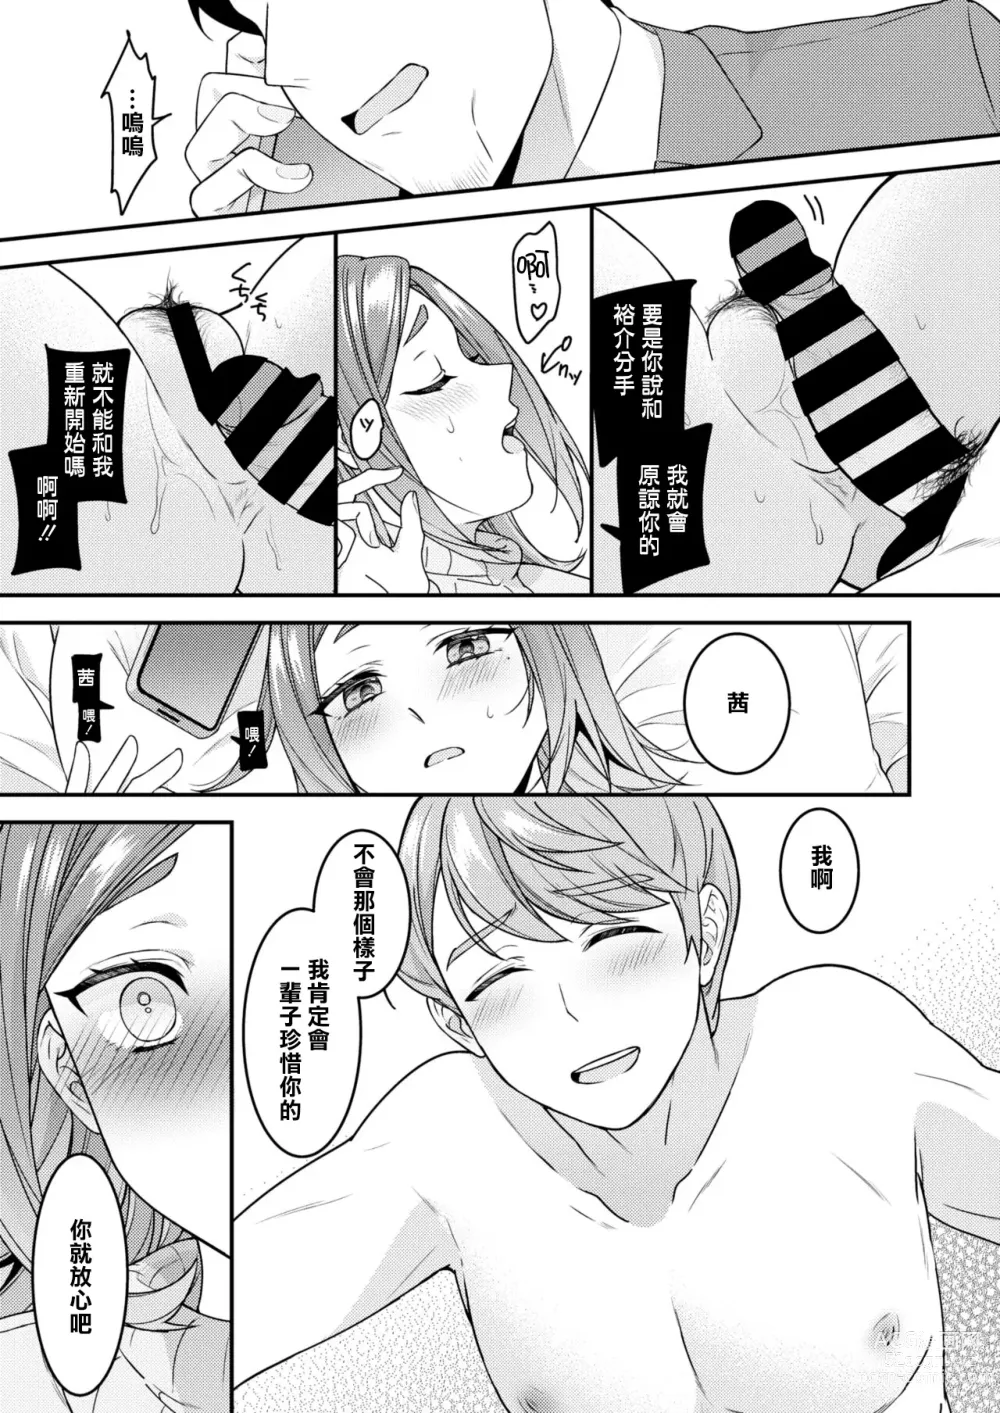 Page 27 of manga Danna to Shitai dake nanoni... Saishuuwa